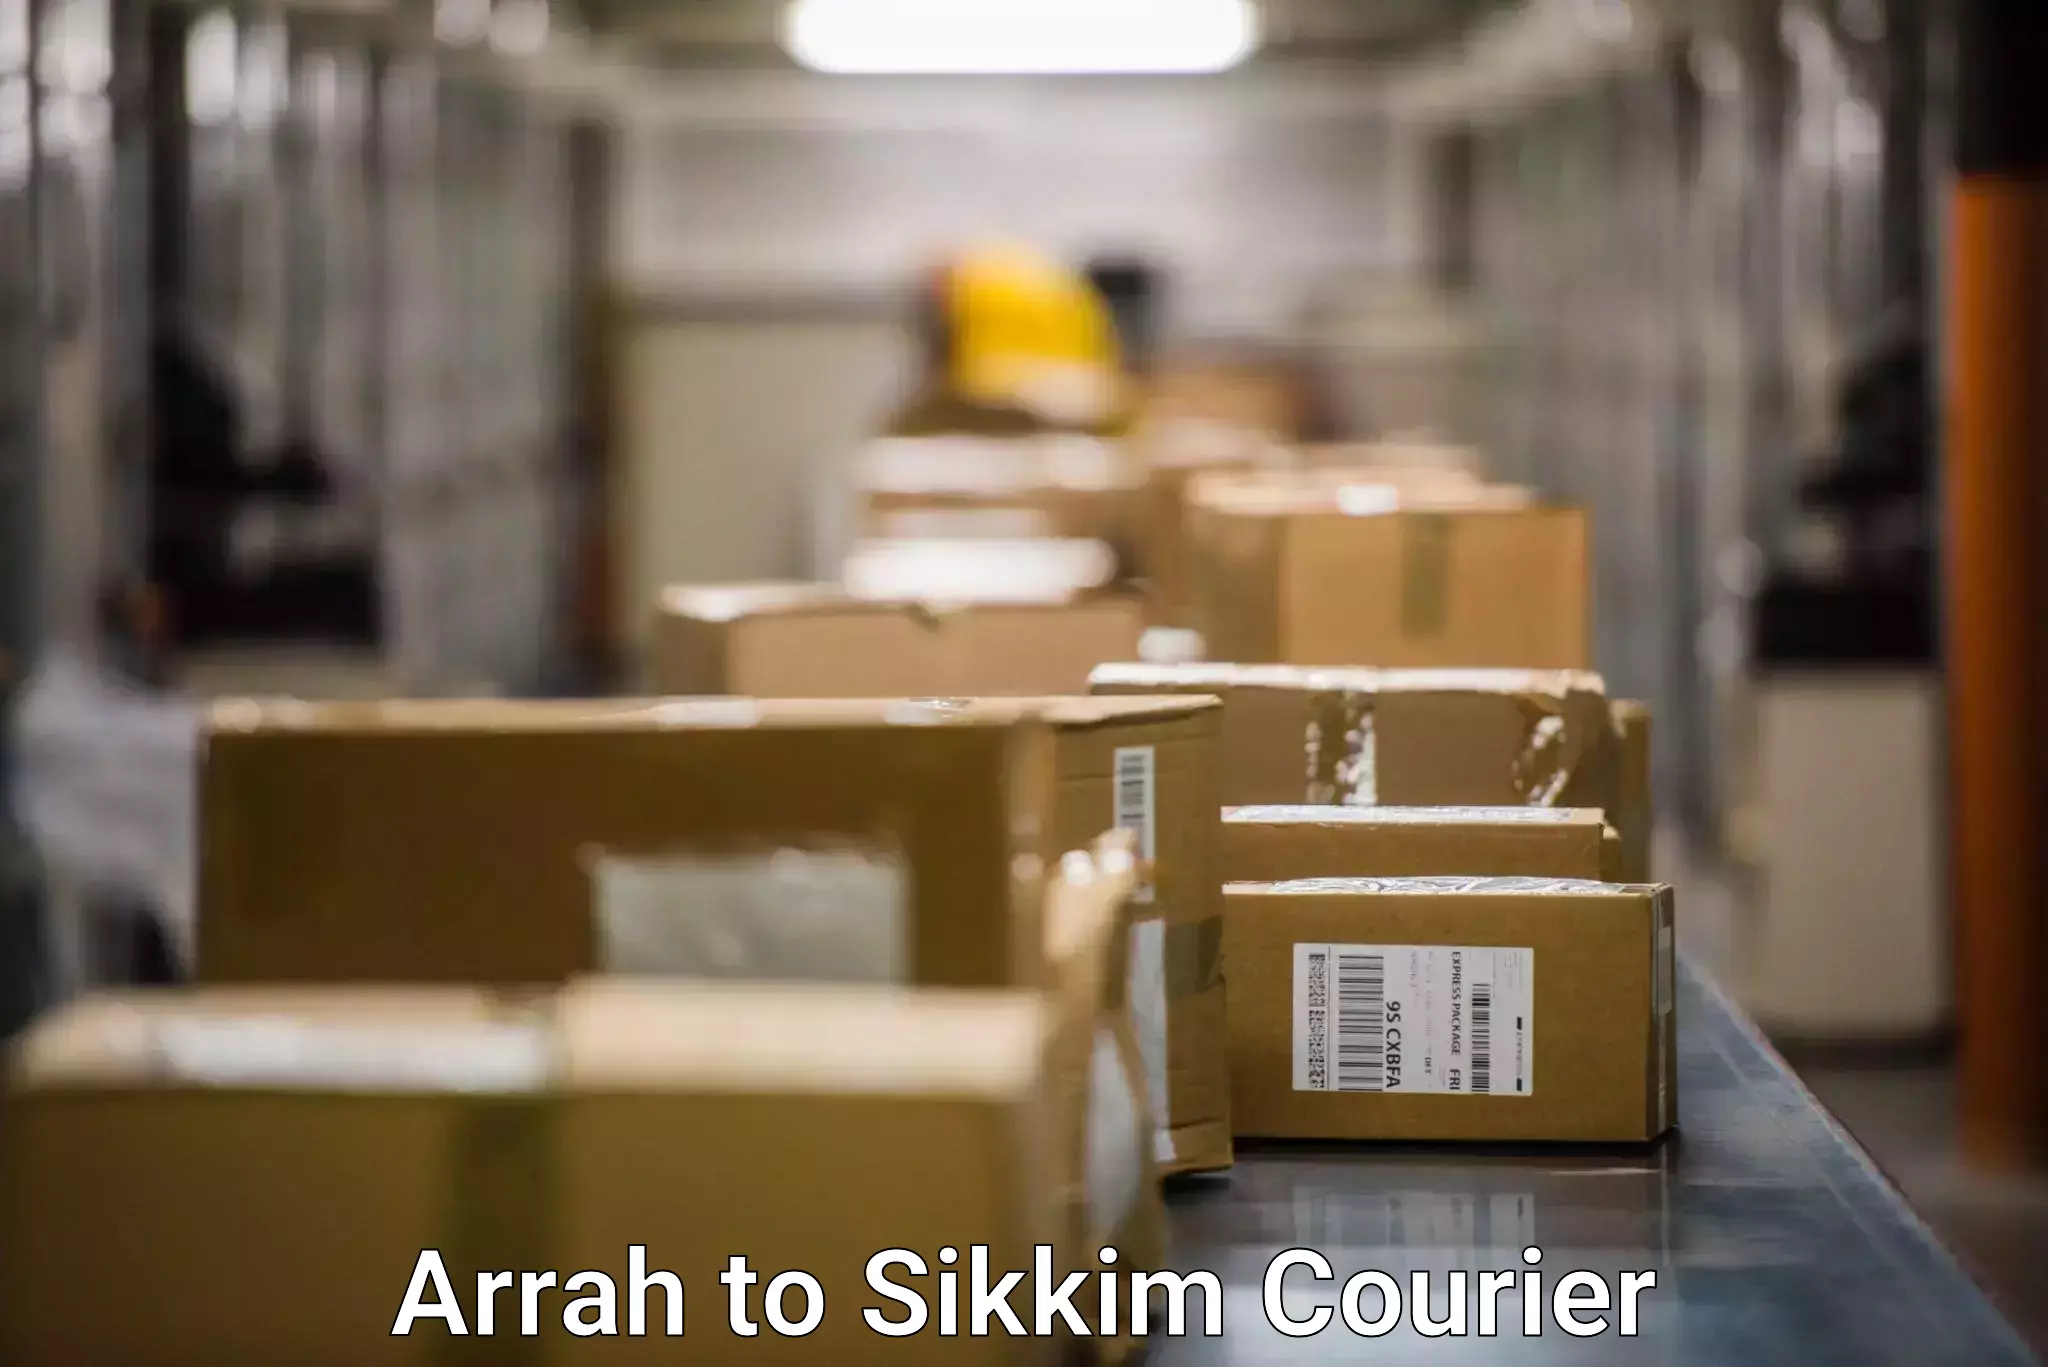 Business shipping needs Arrah to Jorethang